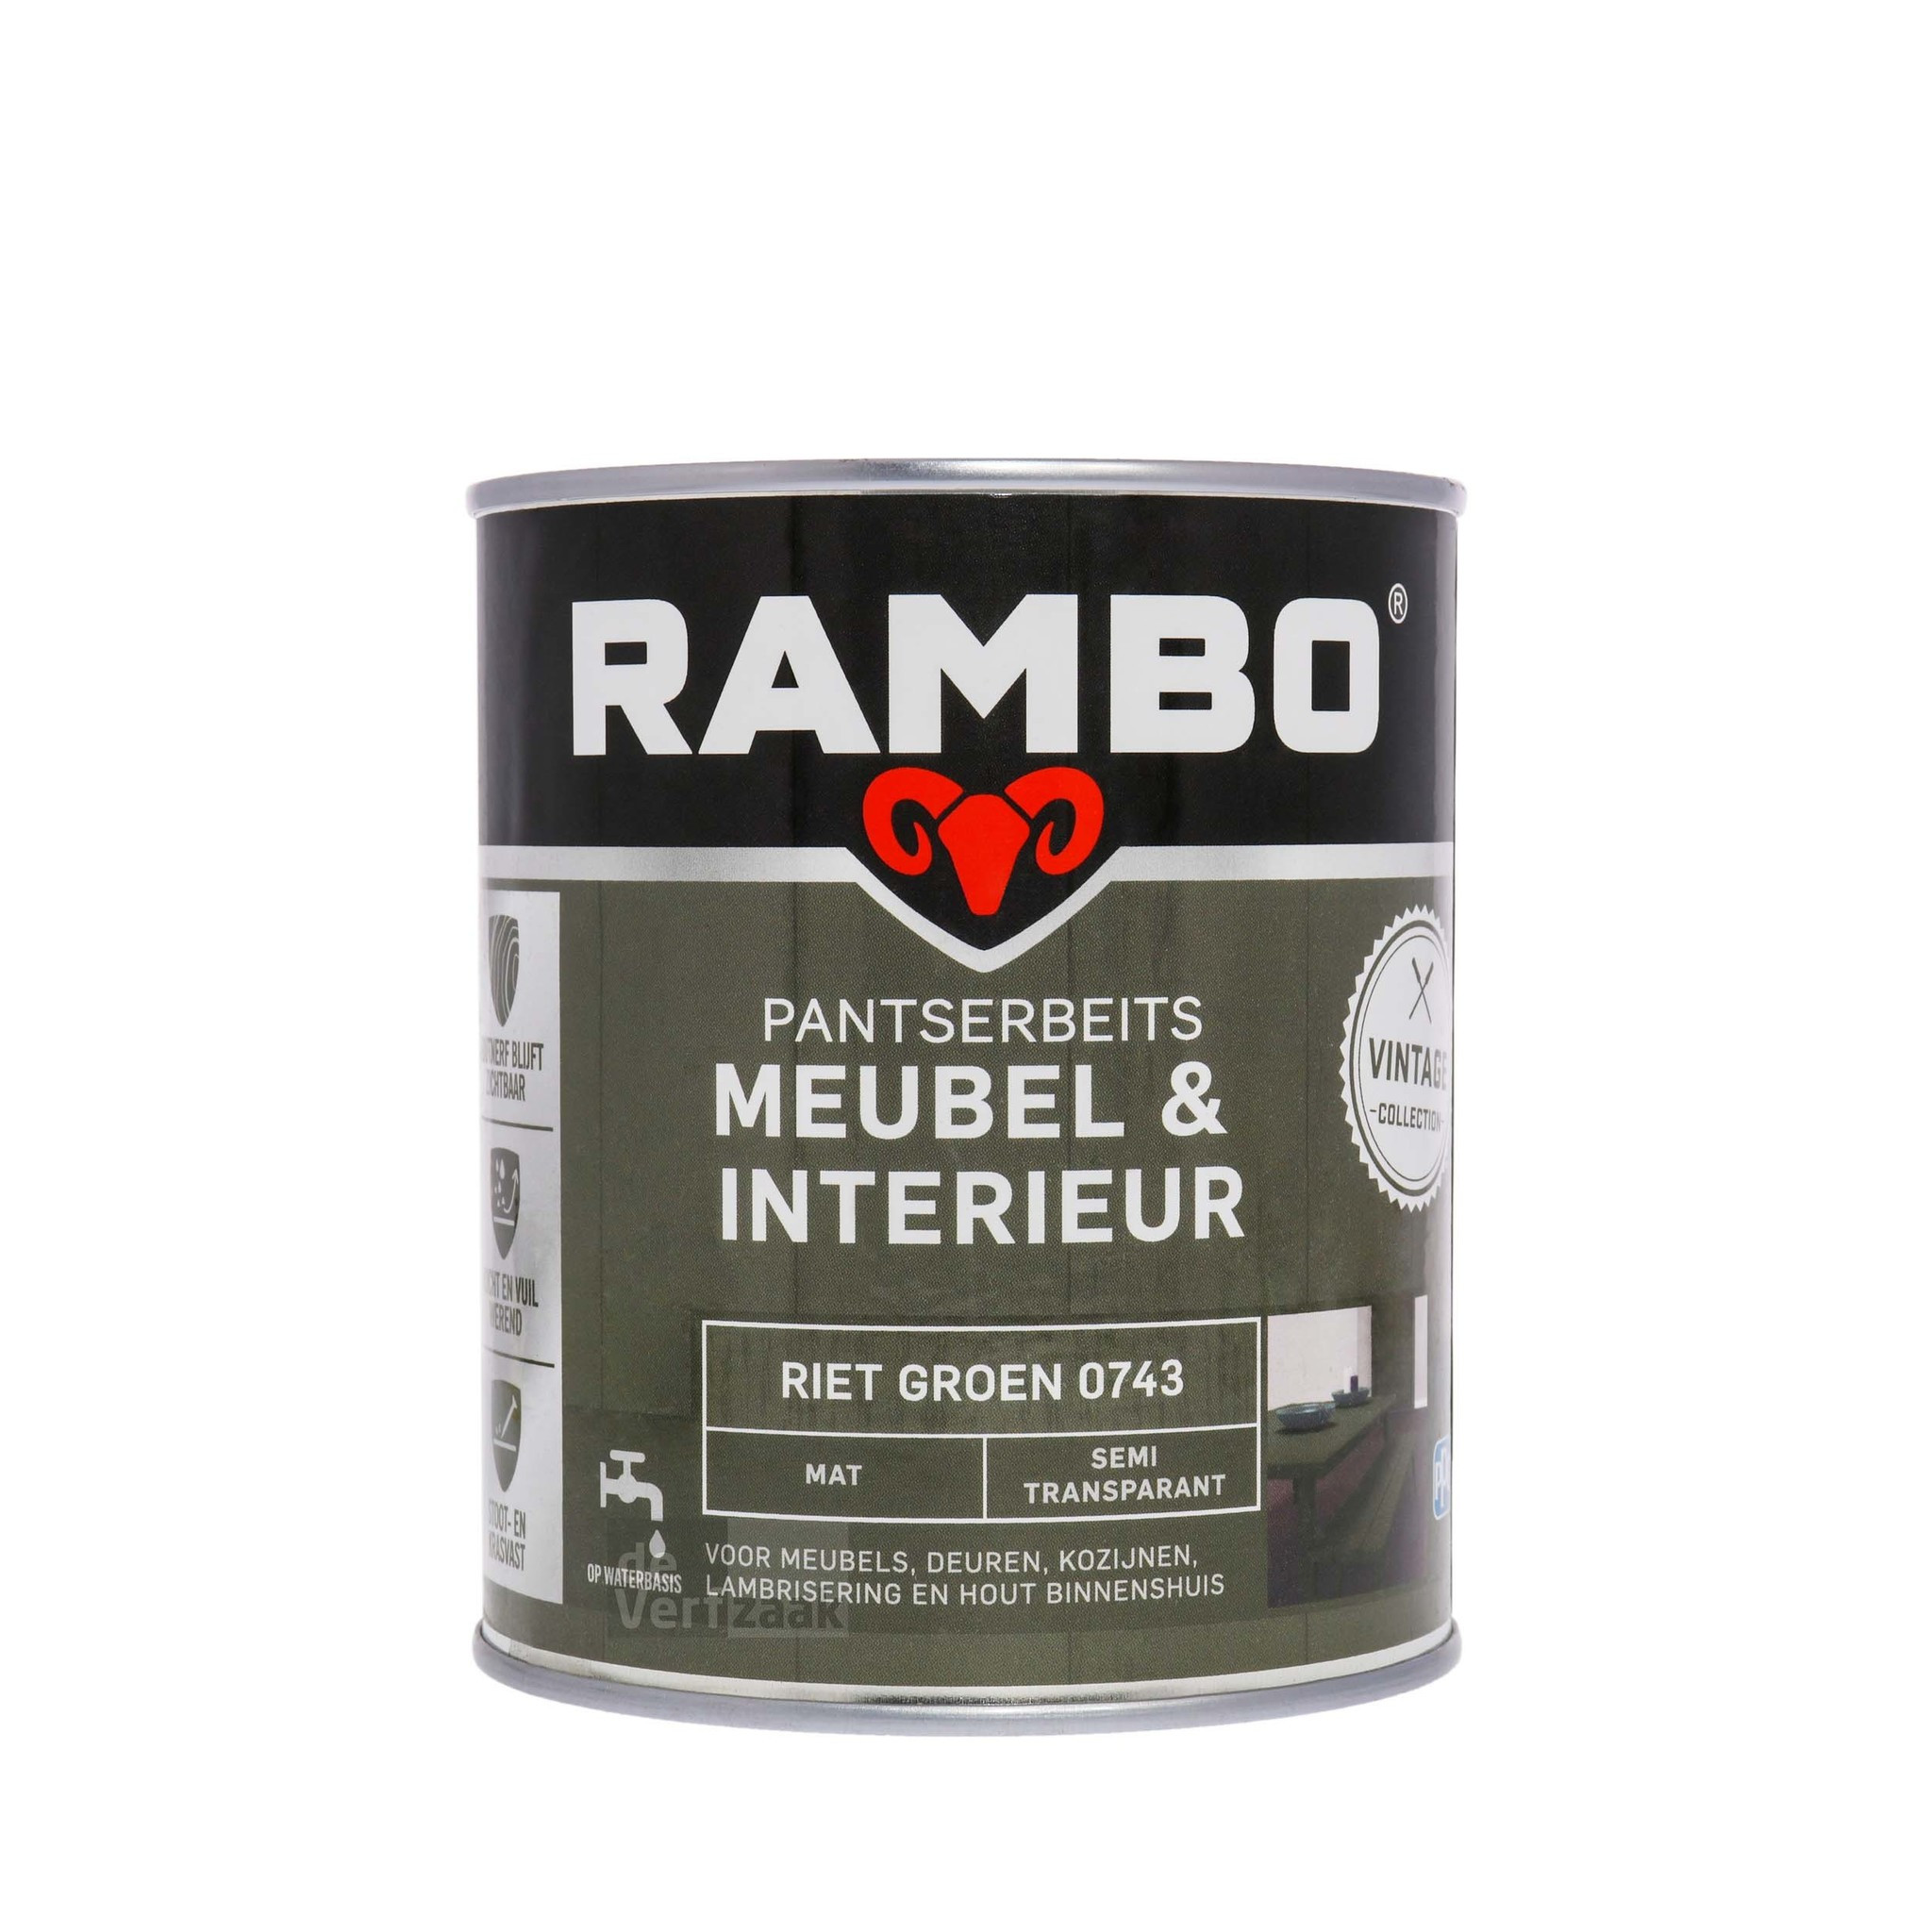 Rambo Pantserbeits Meubel & Interieur Mat 750 ml - Riet Groen